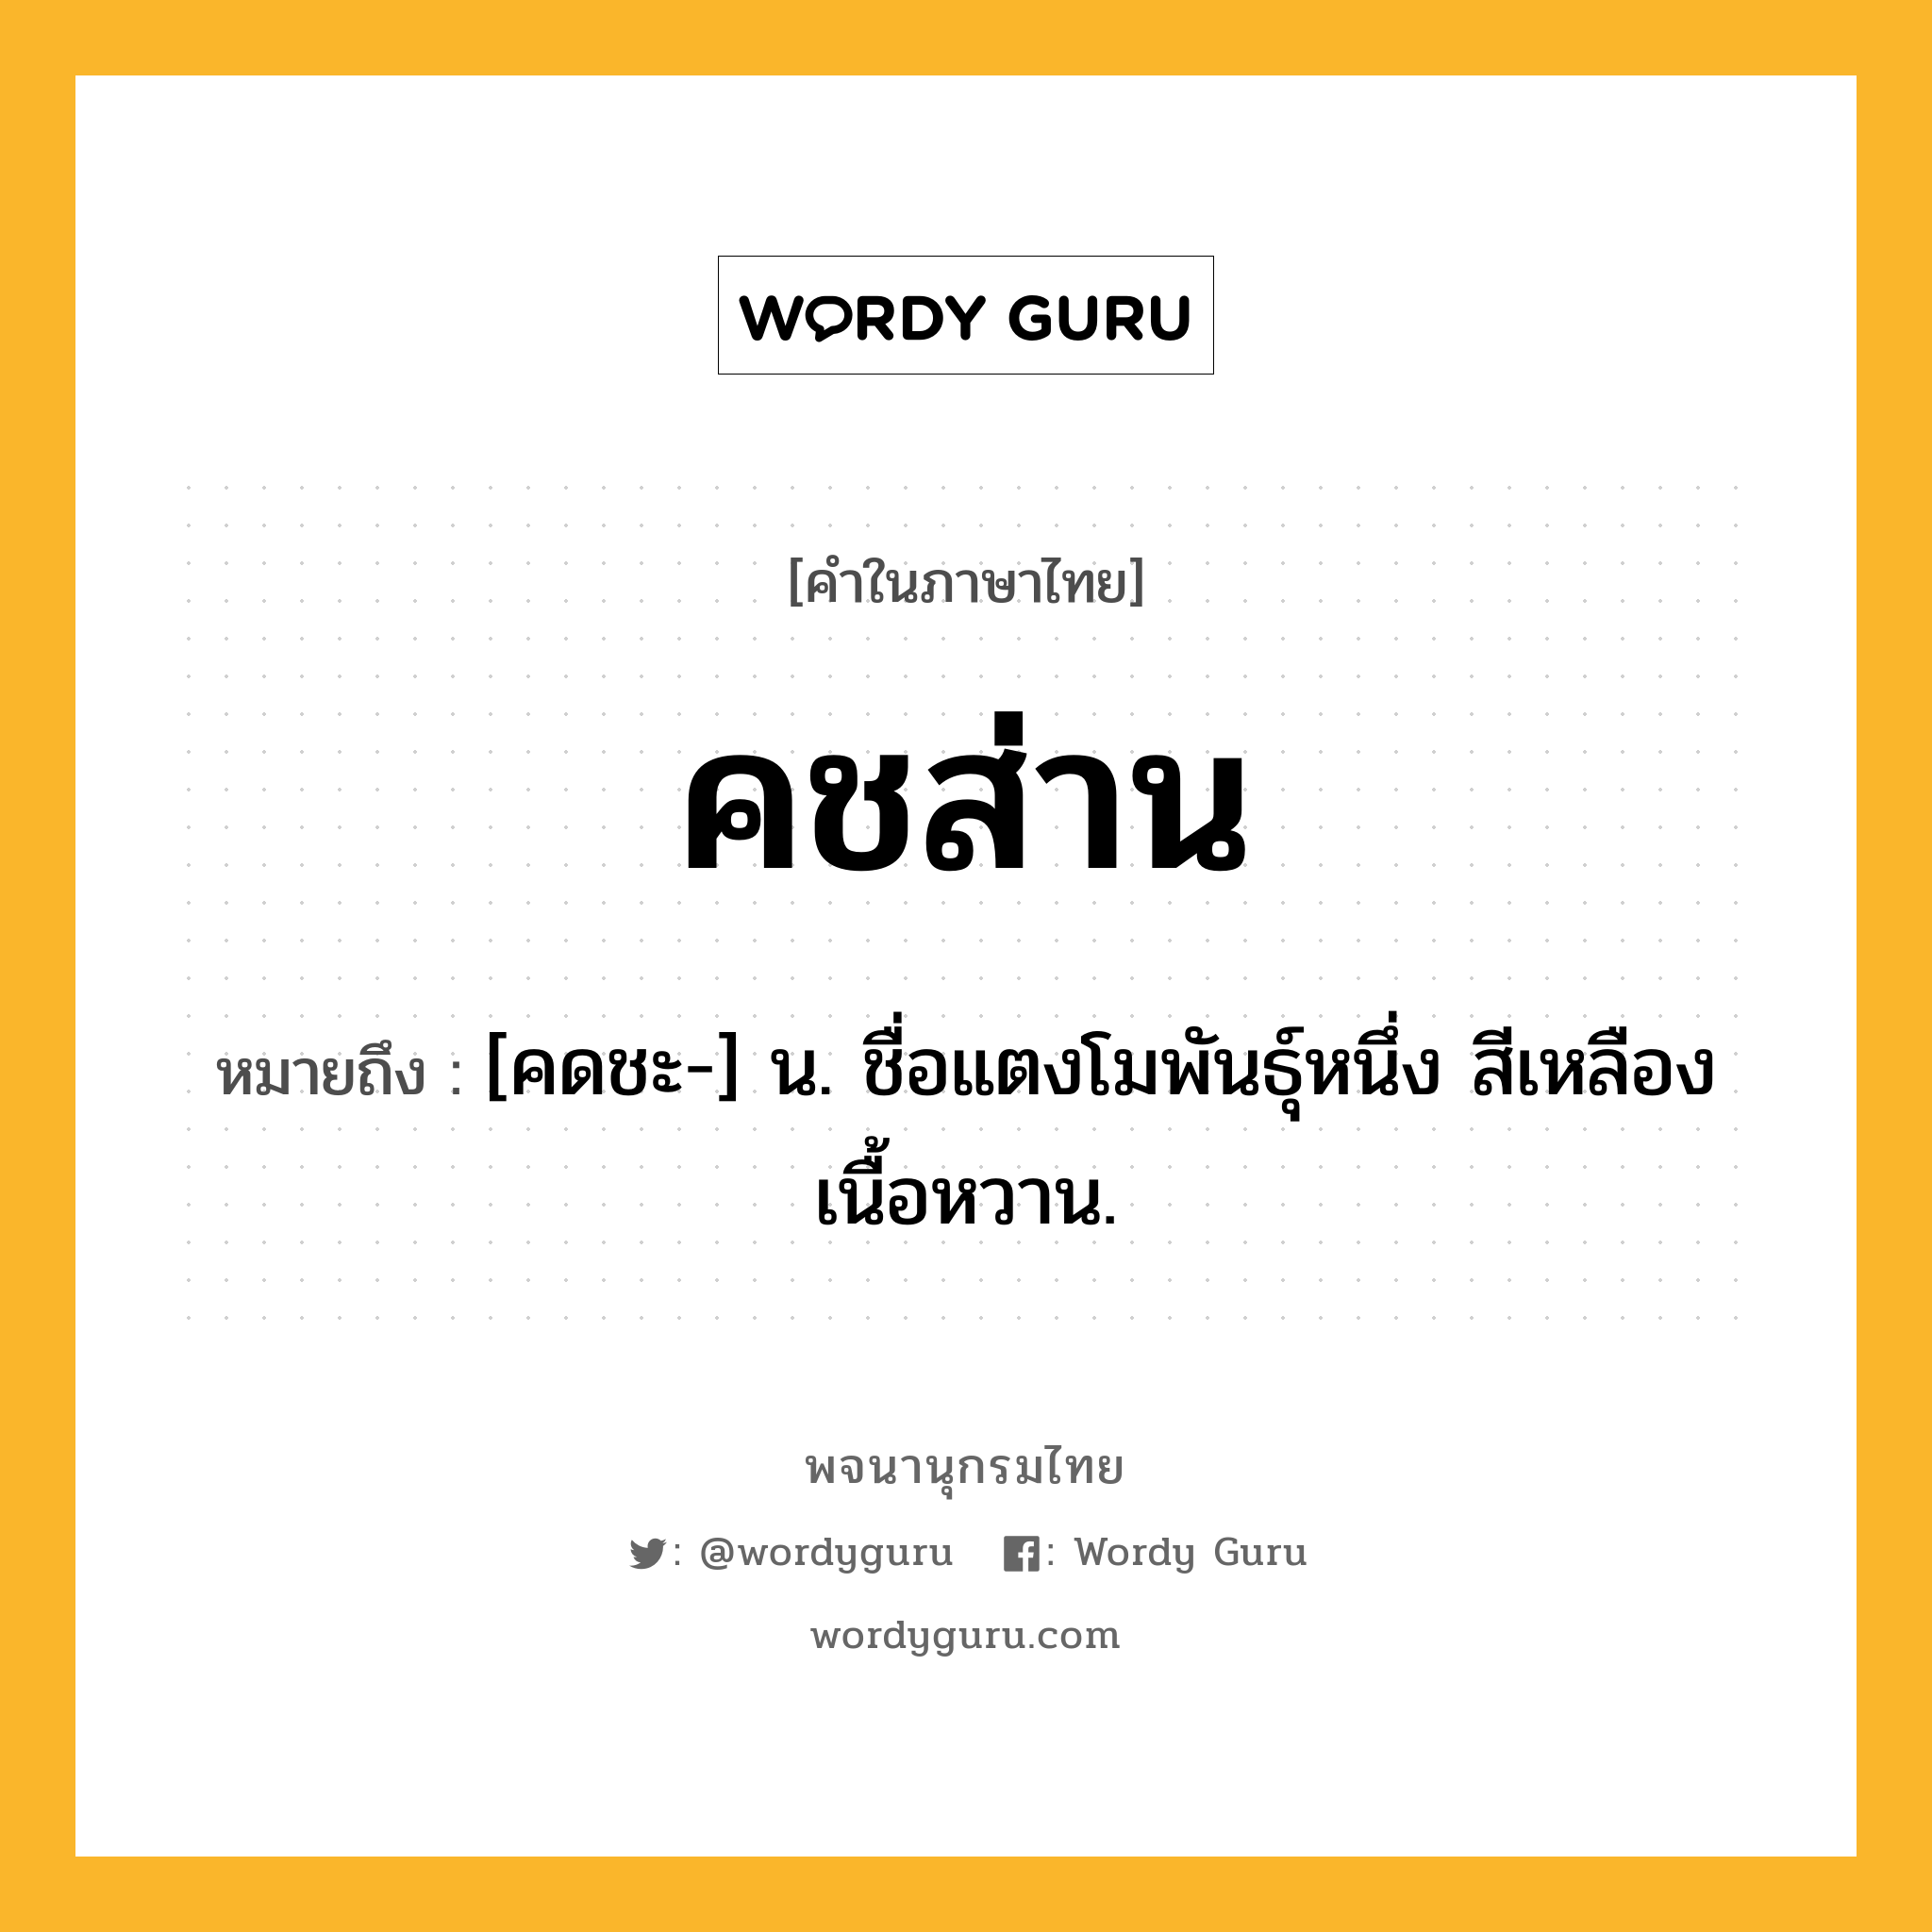 คชส่าน ความหมาย หมายถึงอะไร?, คำในภาษาไทย คชส่าน หมายถึง [คดชะ-] น. ชื่อแตงโมพันธุ์หนึ่ง สีเหลือง เนื้อหวาน.